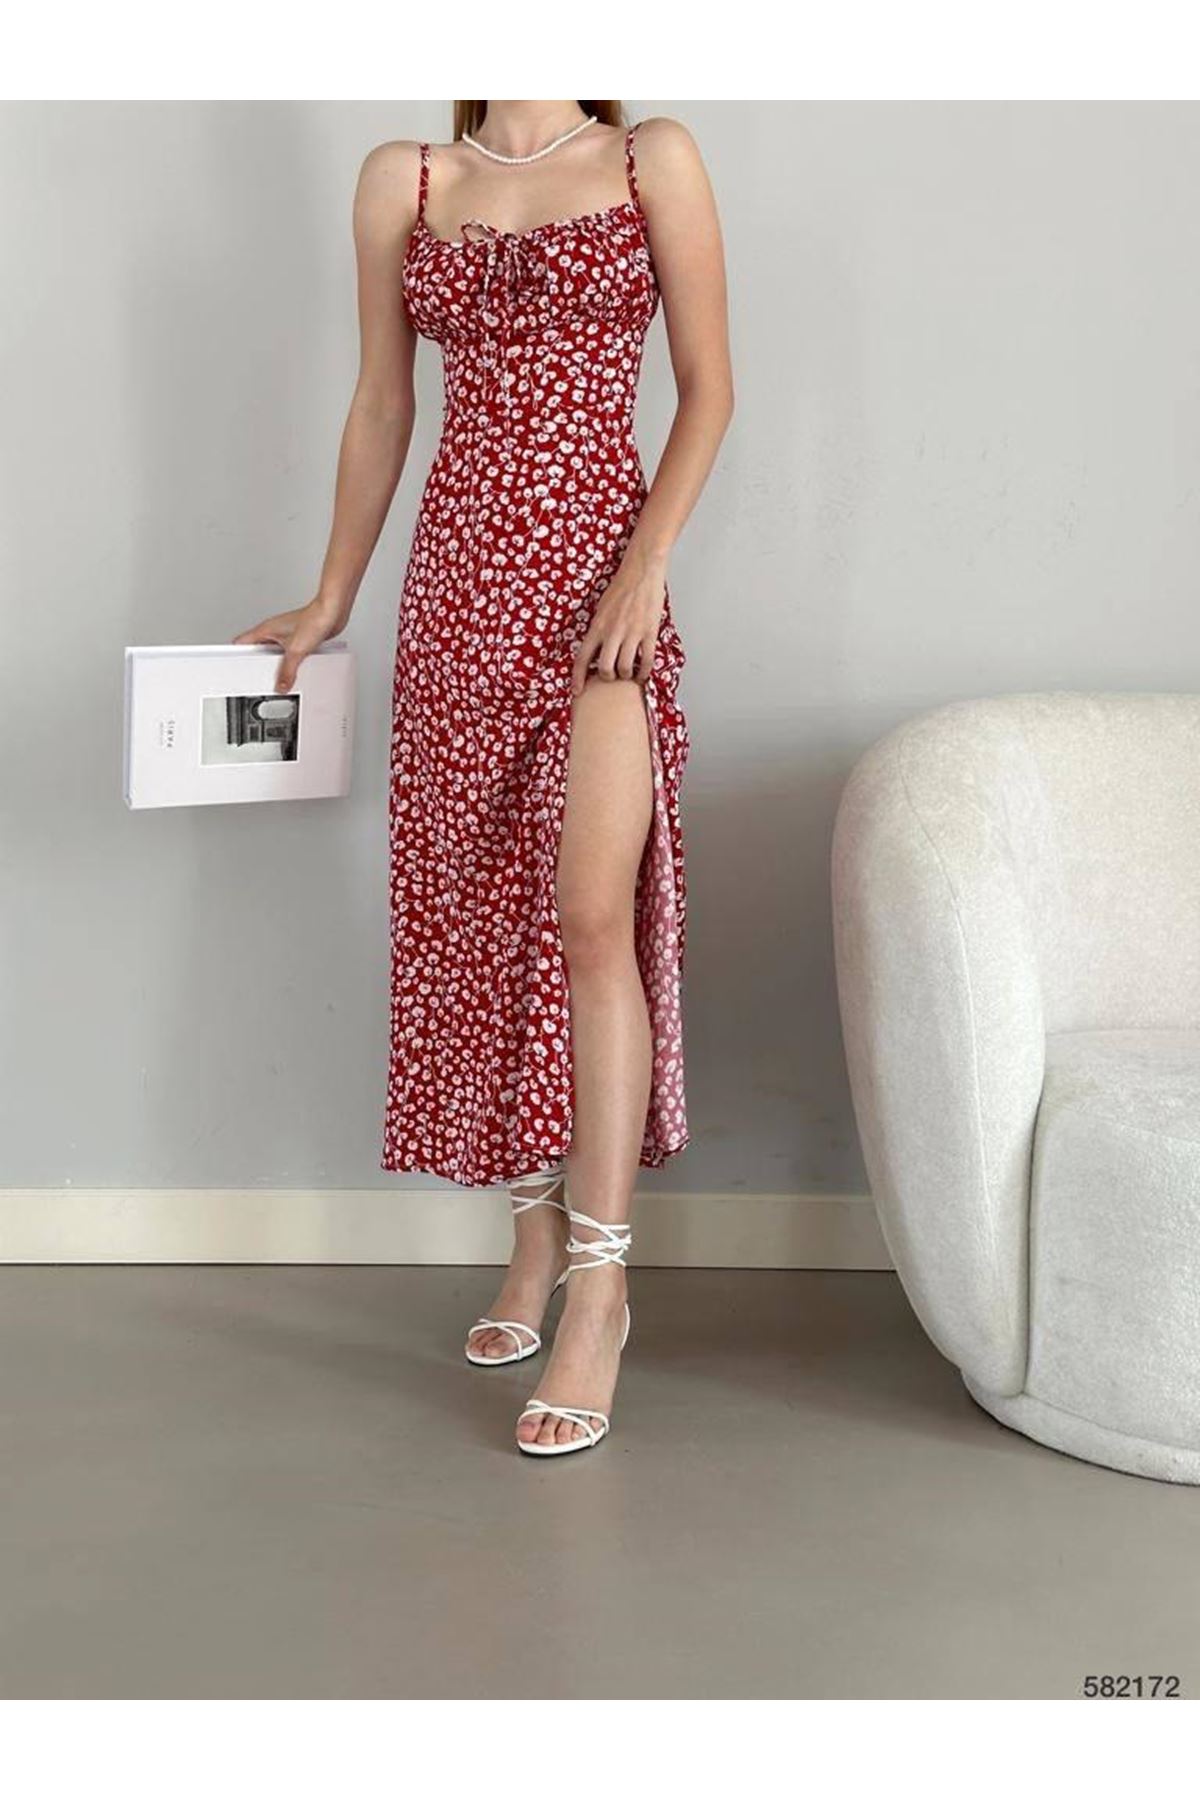 Kadın Askılı Bilek Boy Kırmızı Yırtmaçlı Yazlık Dokuma Elbise 5C-2141